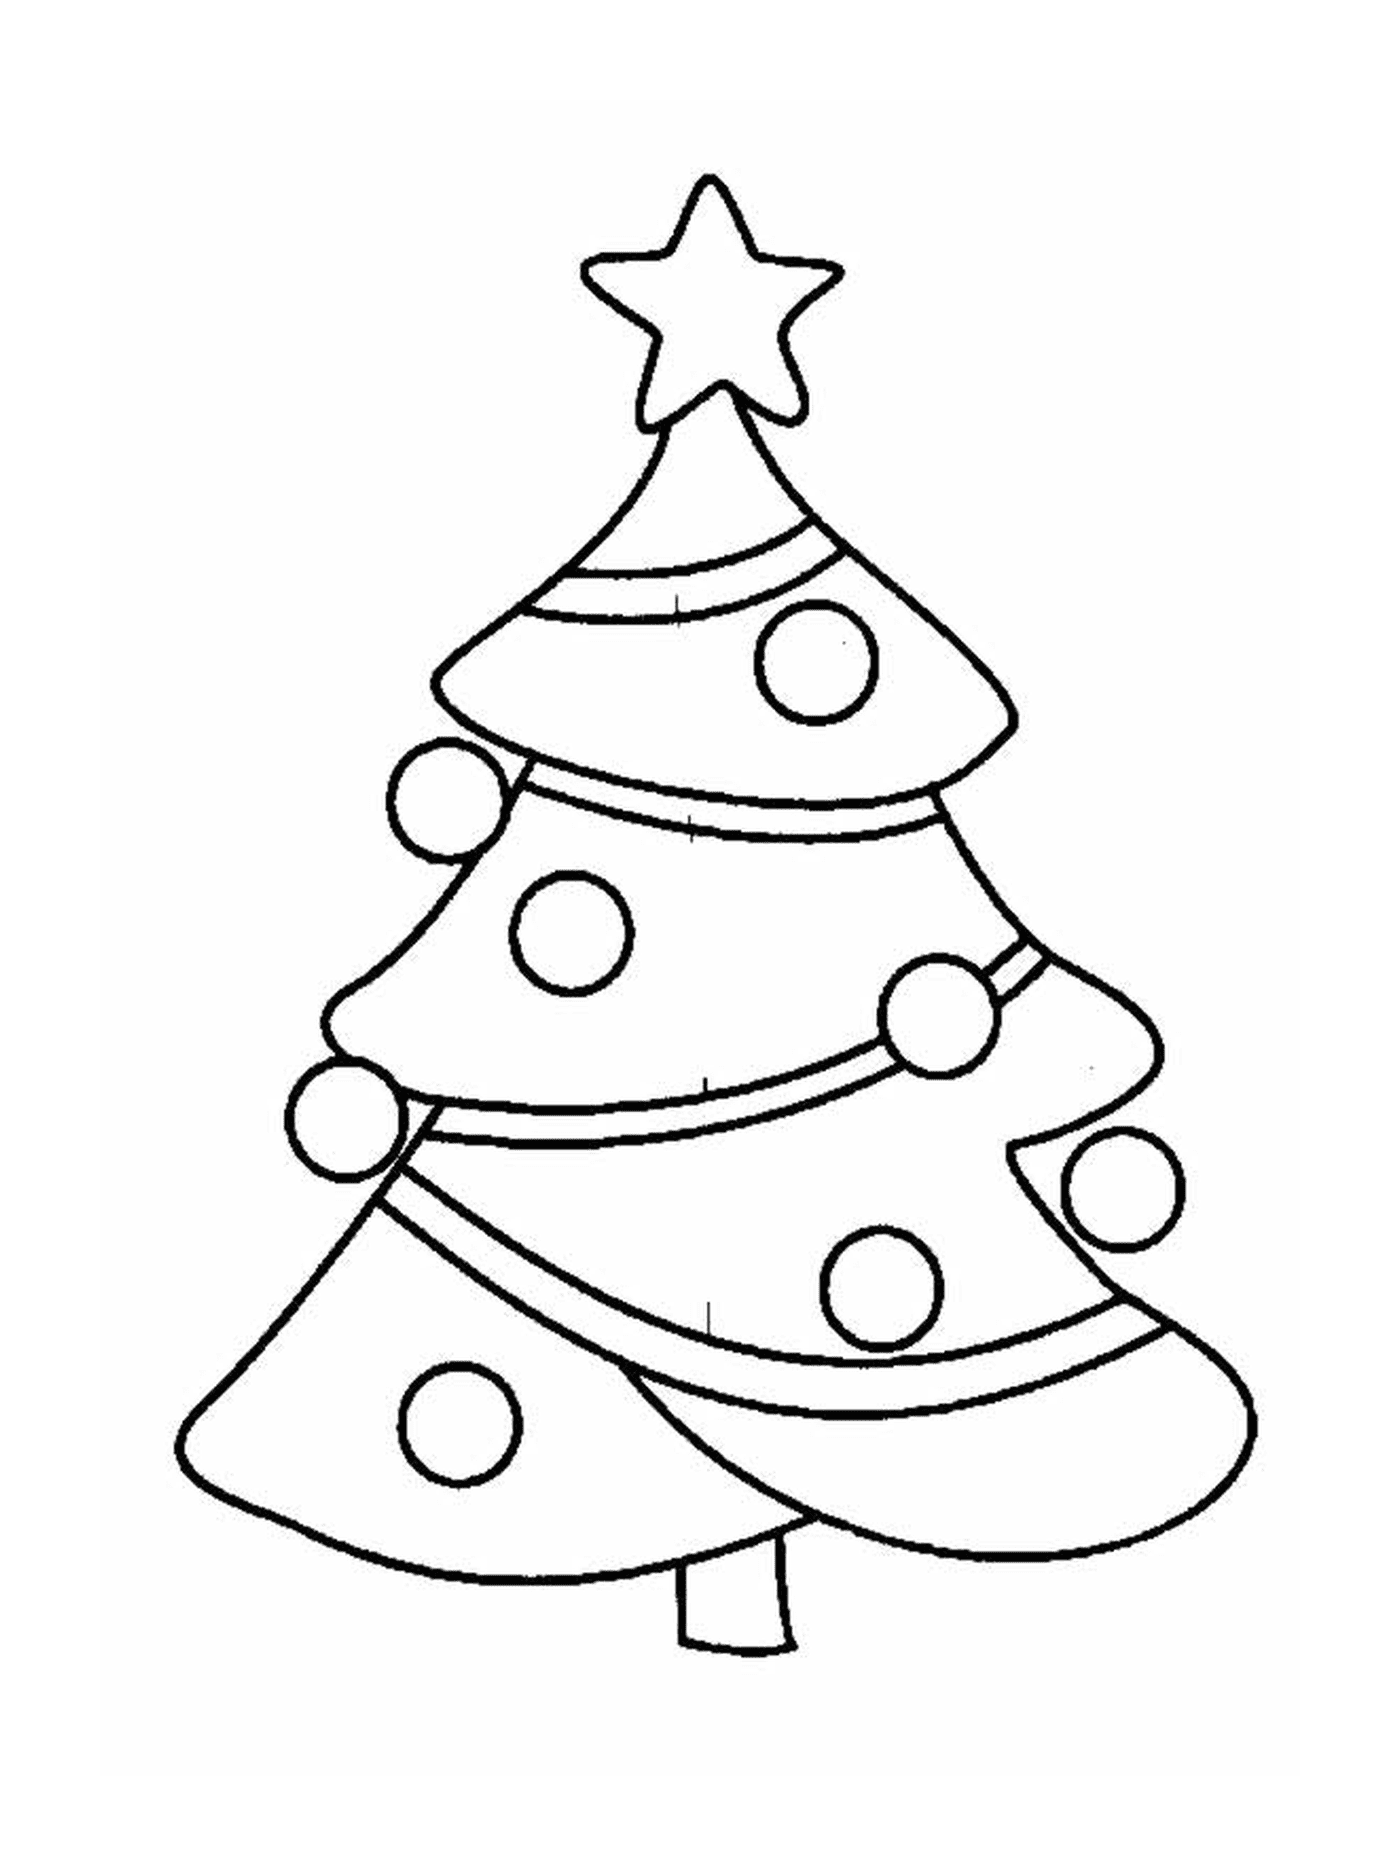  एक क्रिसमस का पेड़ जो ऊपर से सजावटों से बना है 